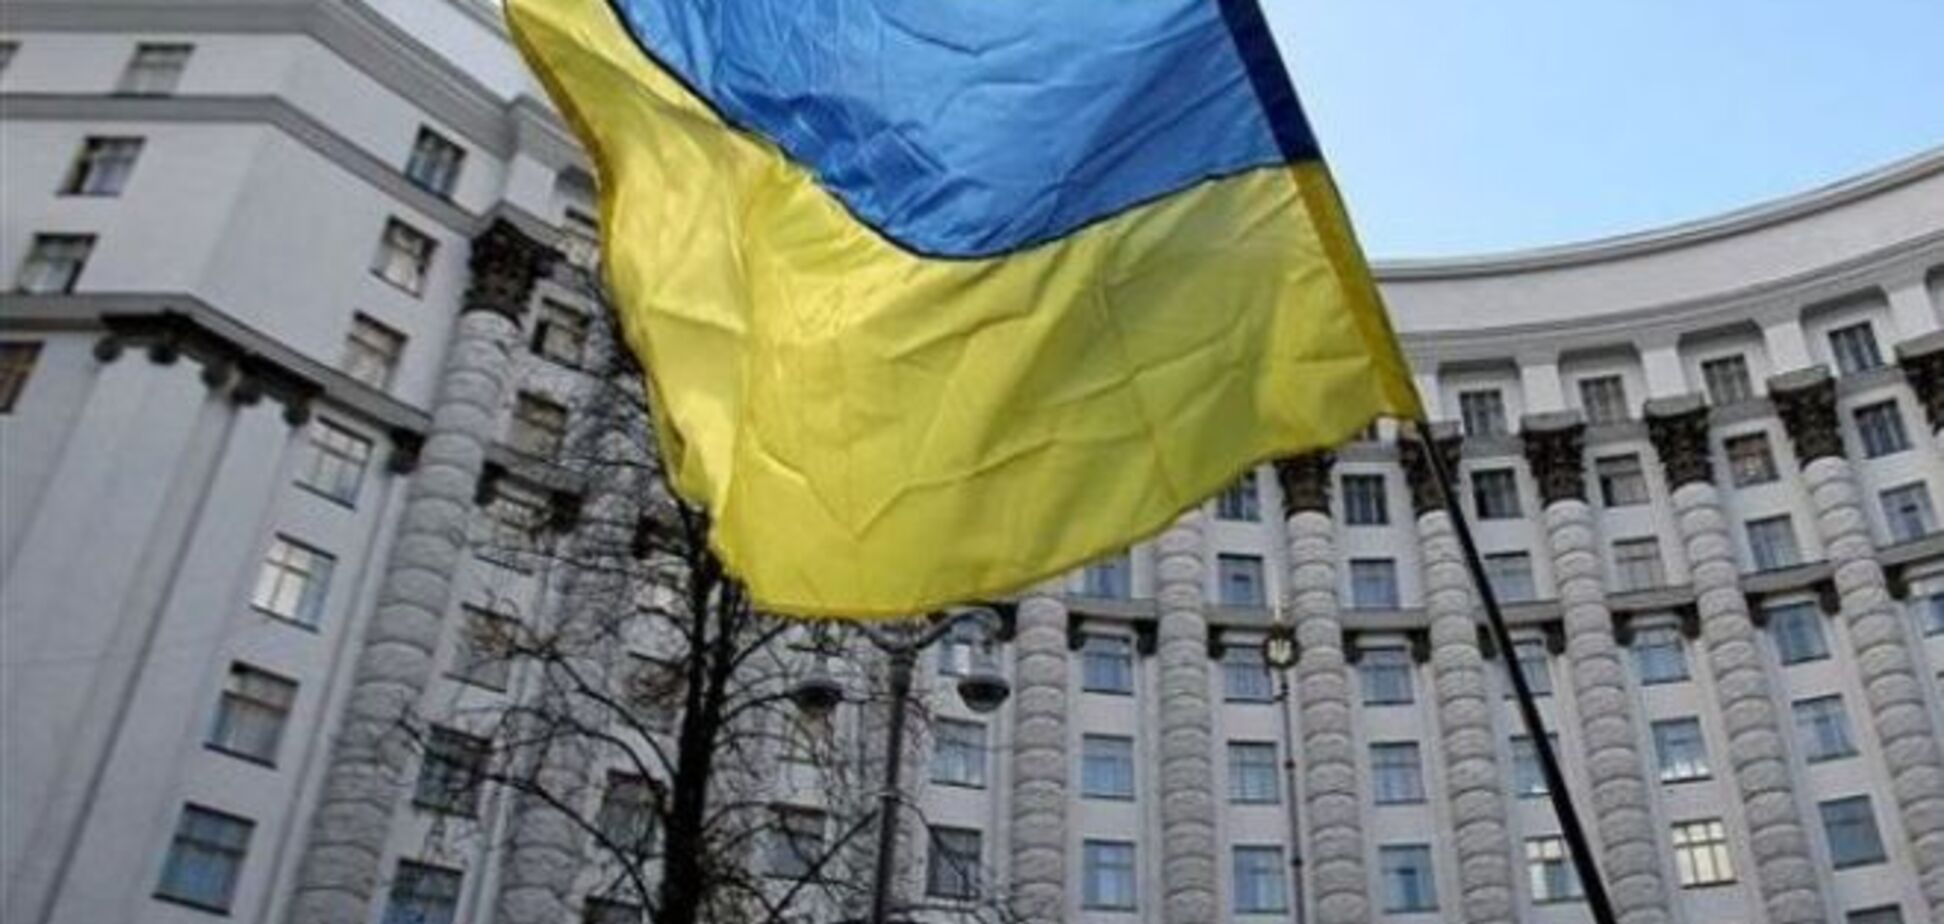 Утвержден новый список стратегических объектов Украины: есть и в Крыму, и в 'ЛНР/ДНР'